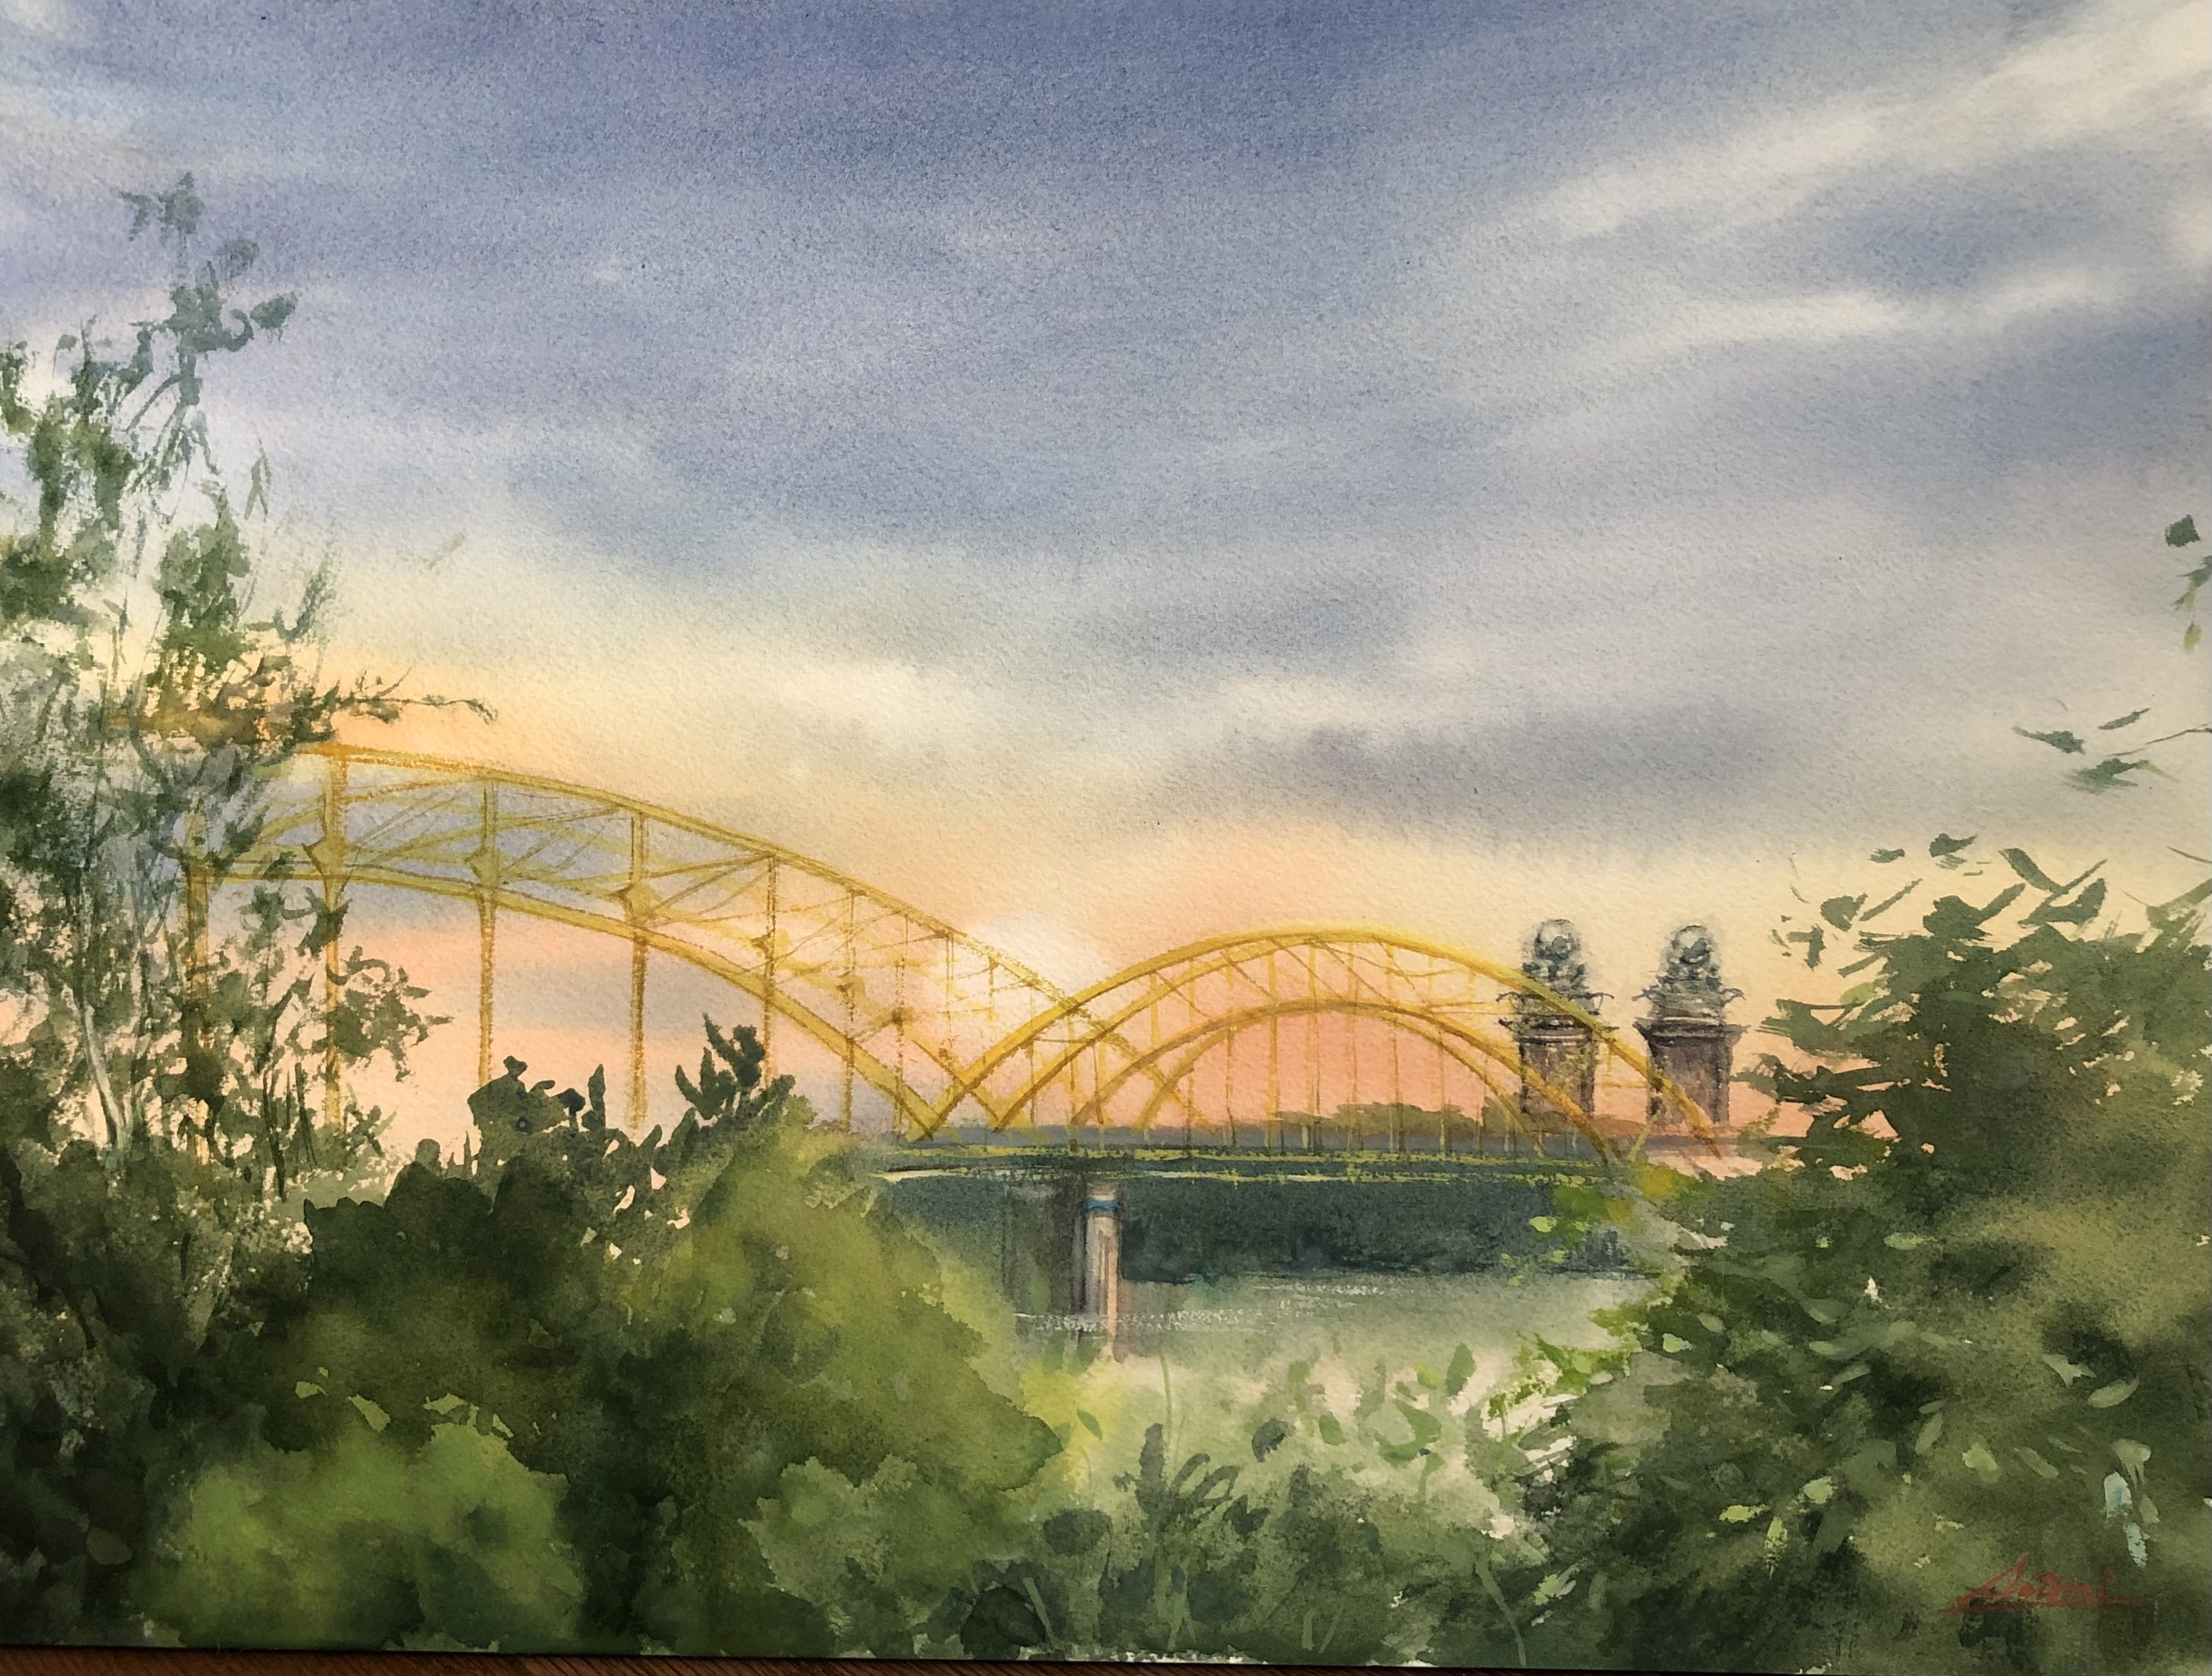 The Bridges at Dusk
Watercolor

$355.